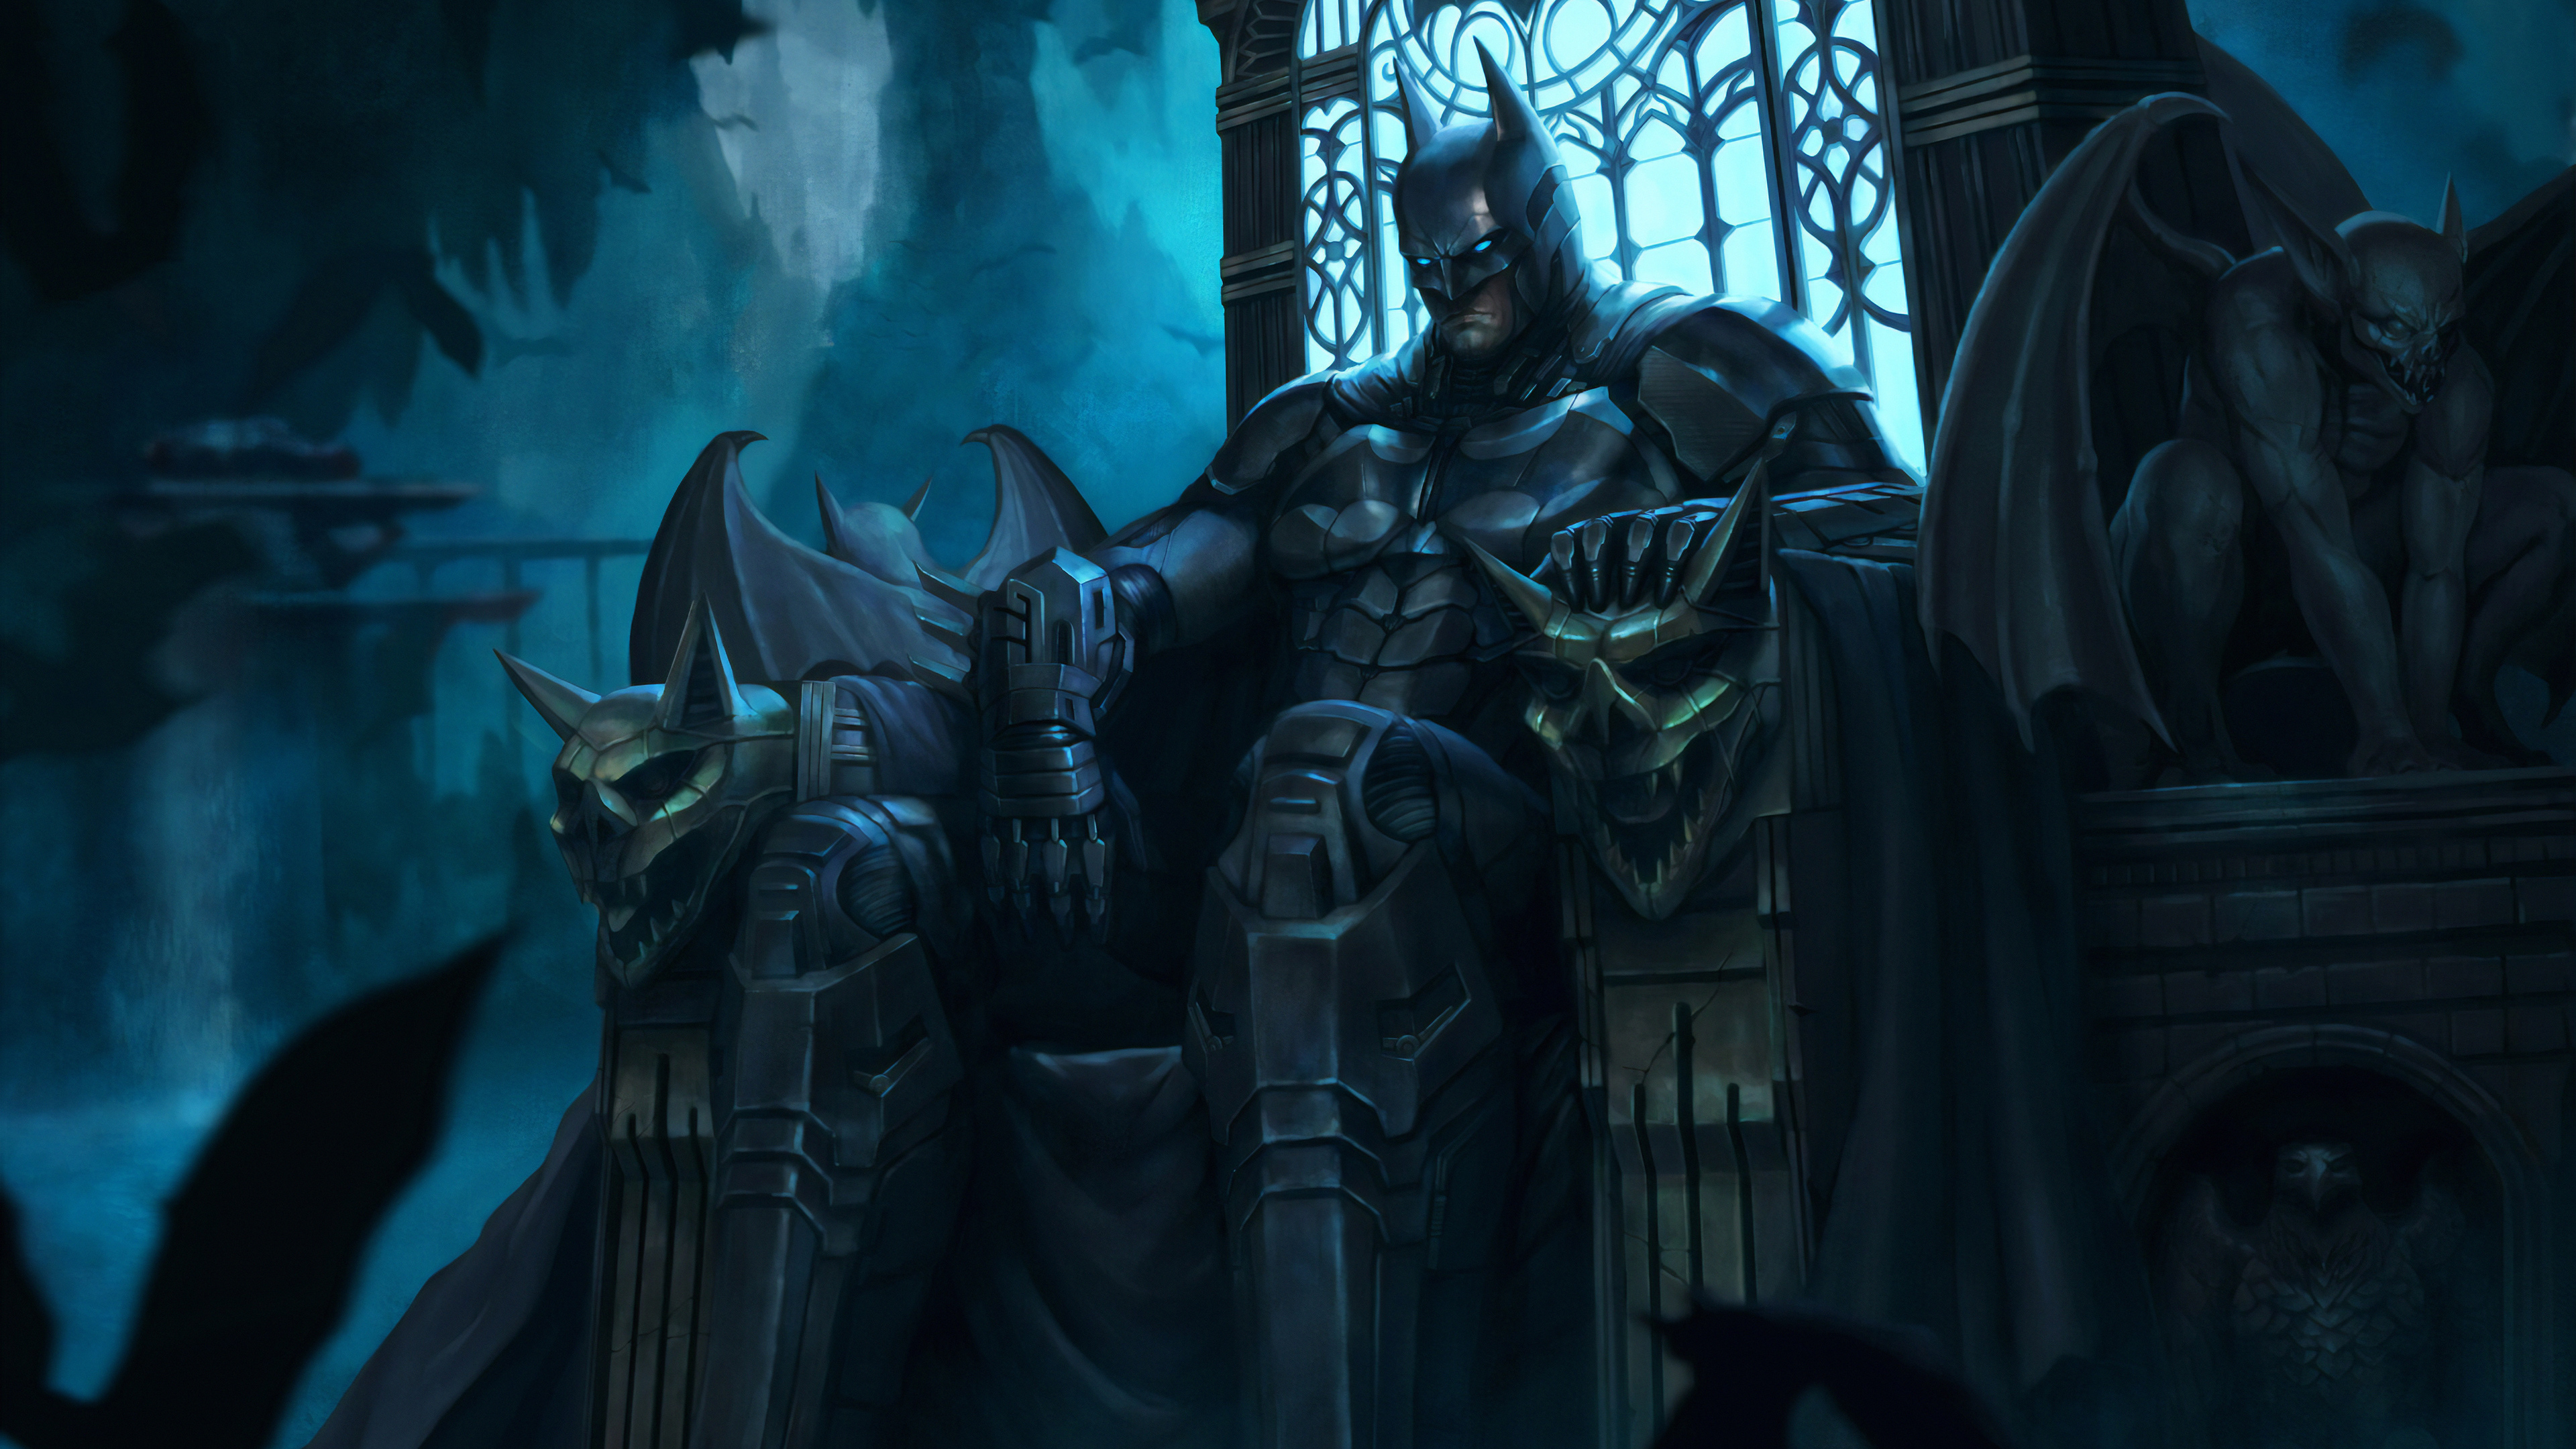 batman sitting on throne 1572368677 - Batman Sitting On Throne - superheroes wallpapers, hd-wallpapers, digital art wallpapers, batman wallpapers, artwork wallpapers, artstation wallpapers, 4k-wallpapers